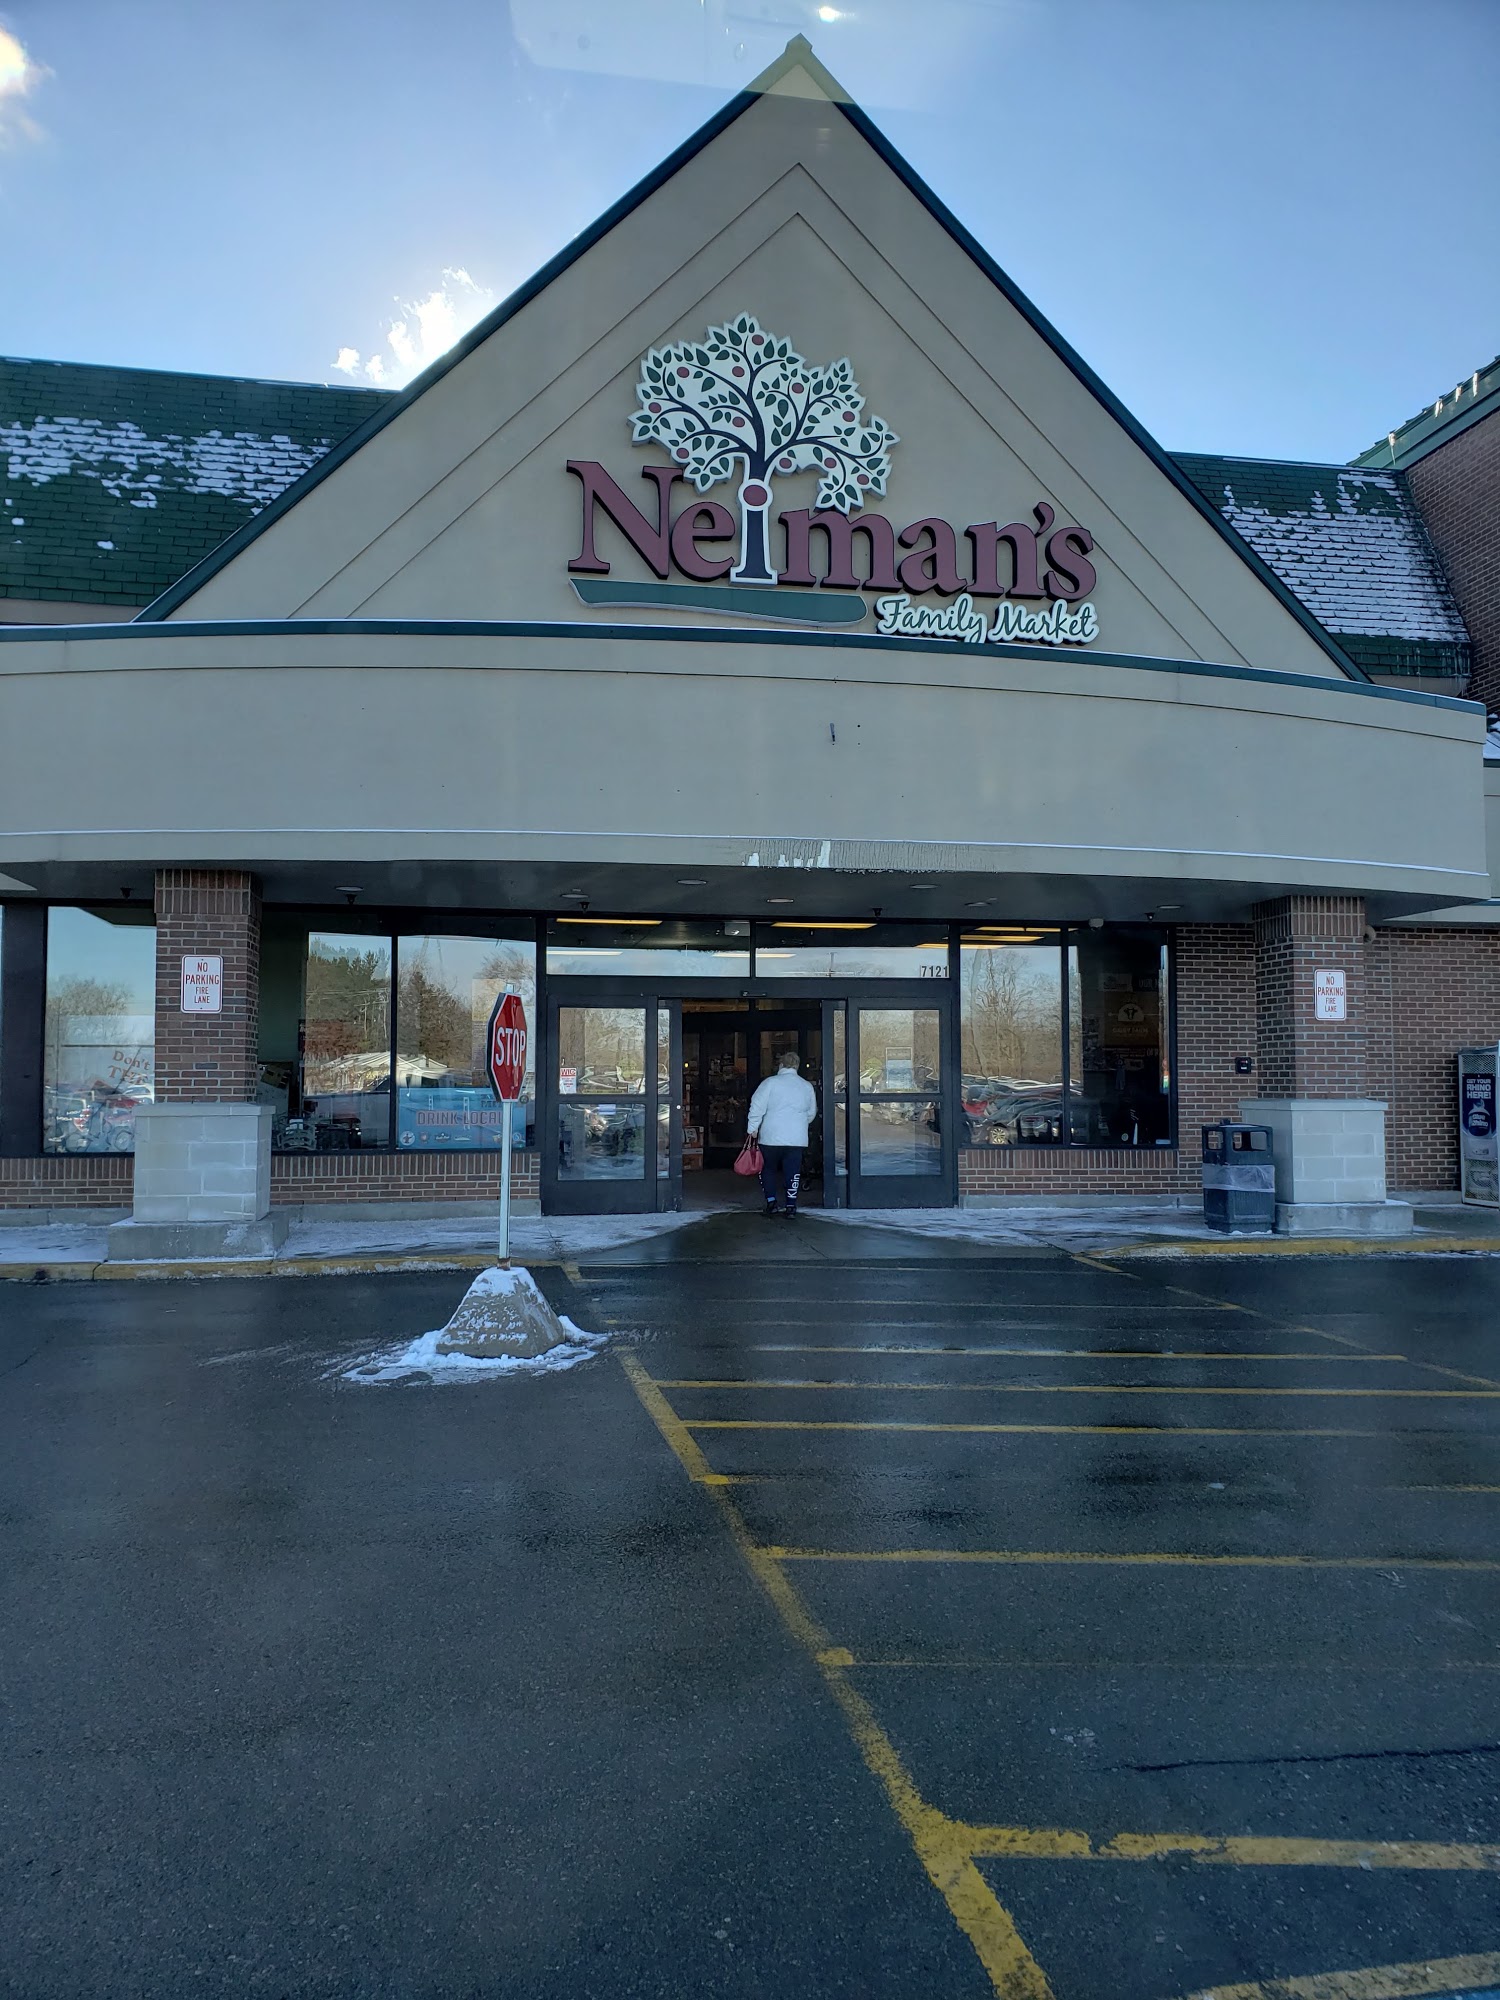 Neiman's Family Market